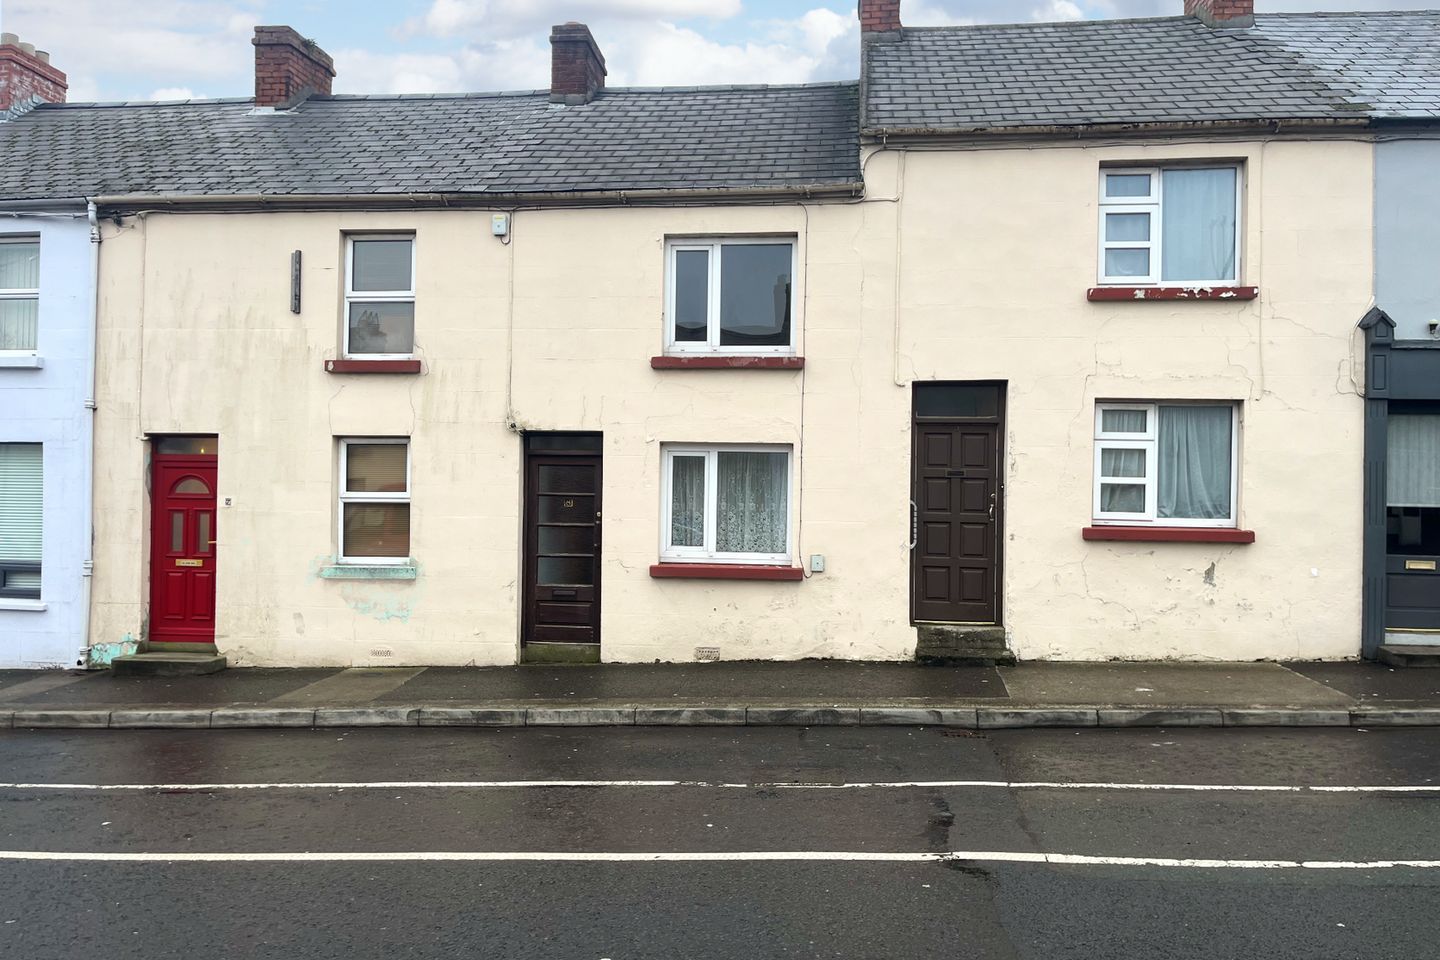 8 McLynn's Terrace, Pearse Road, Sligo, Co. Sligo